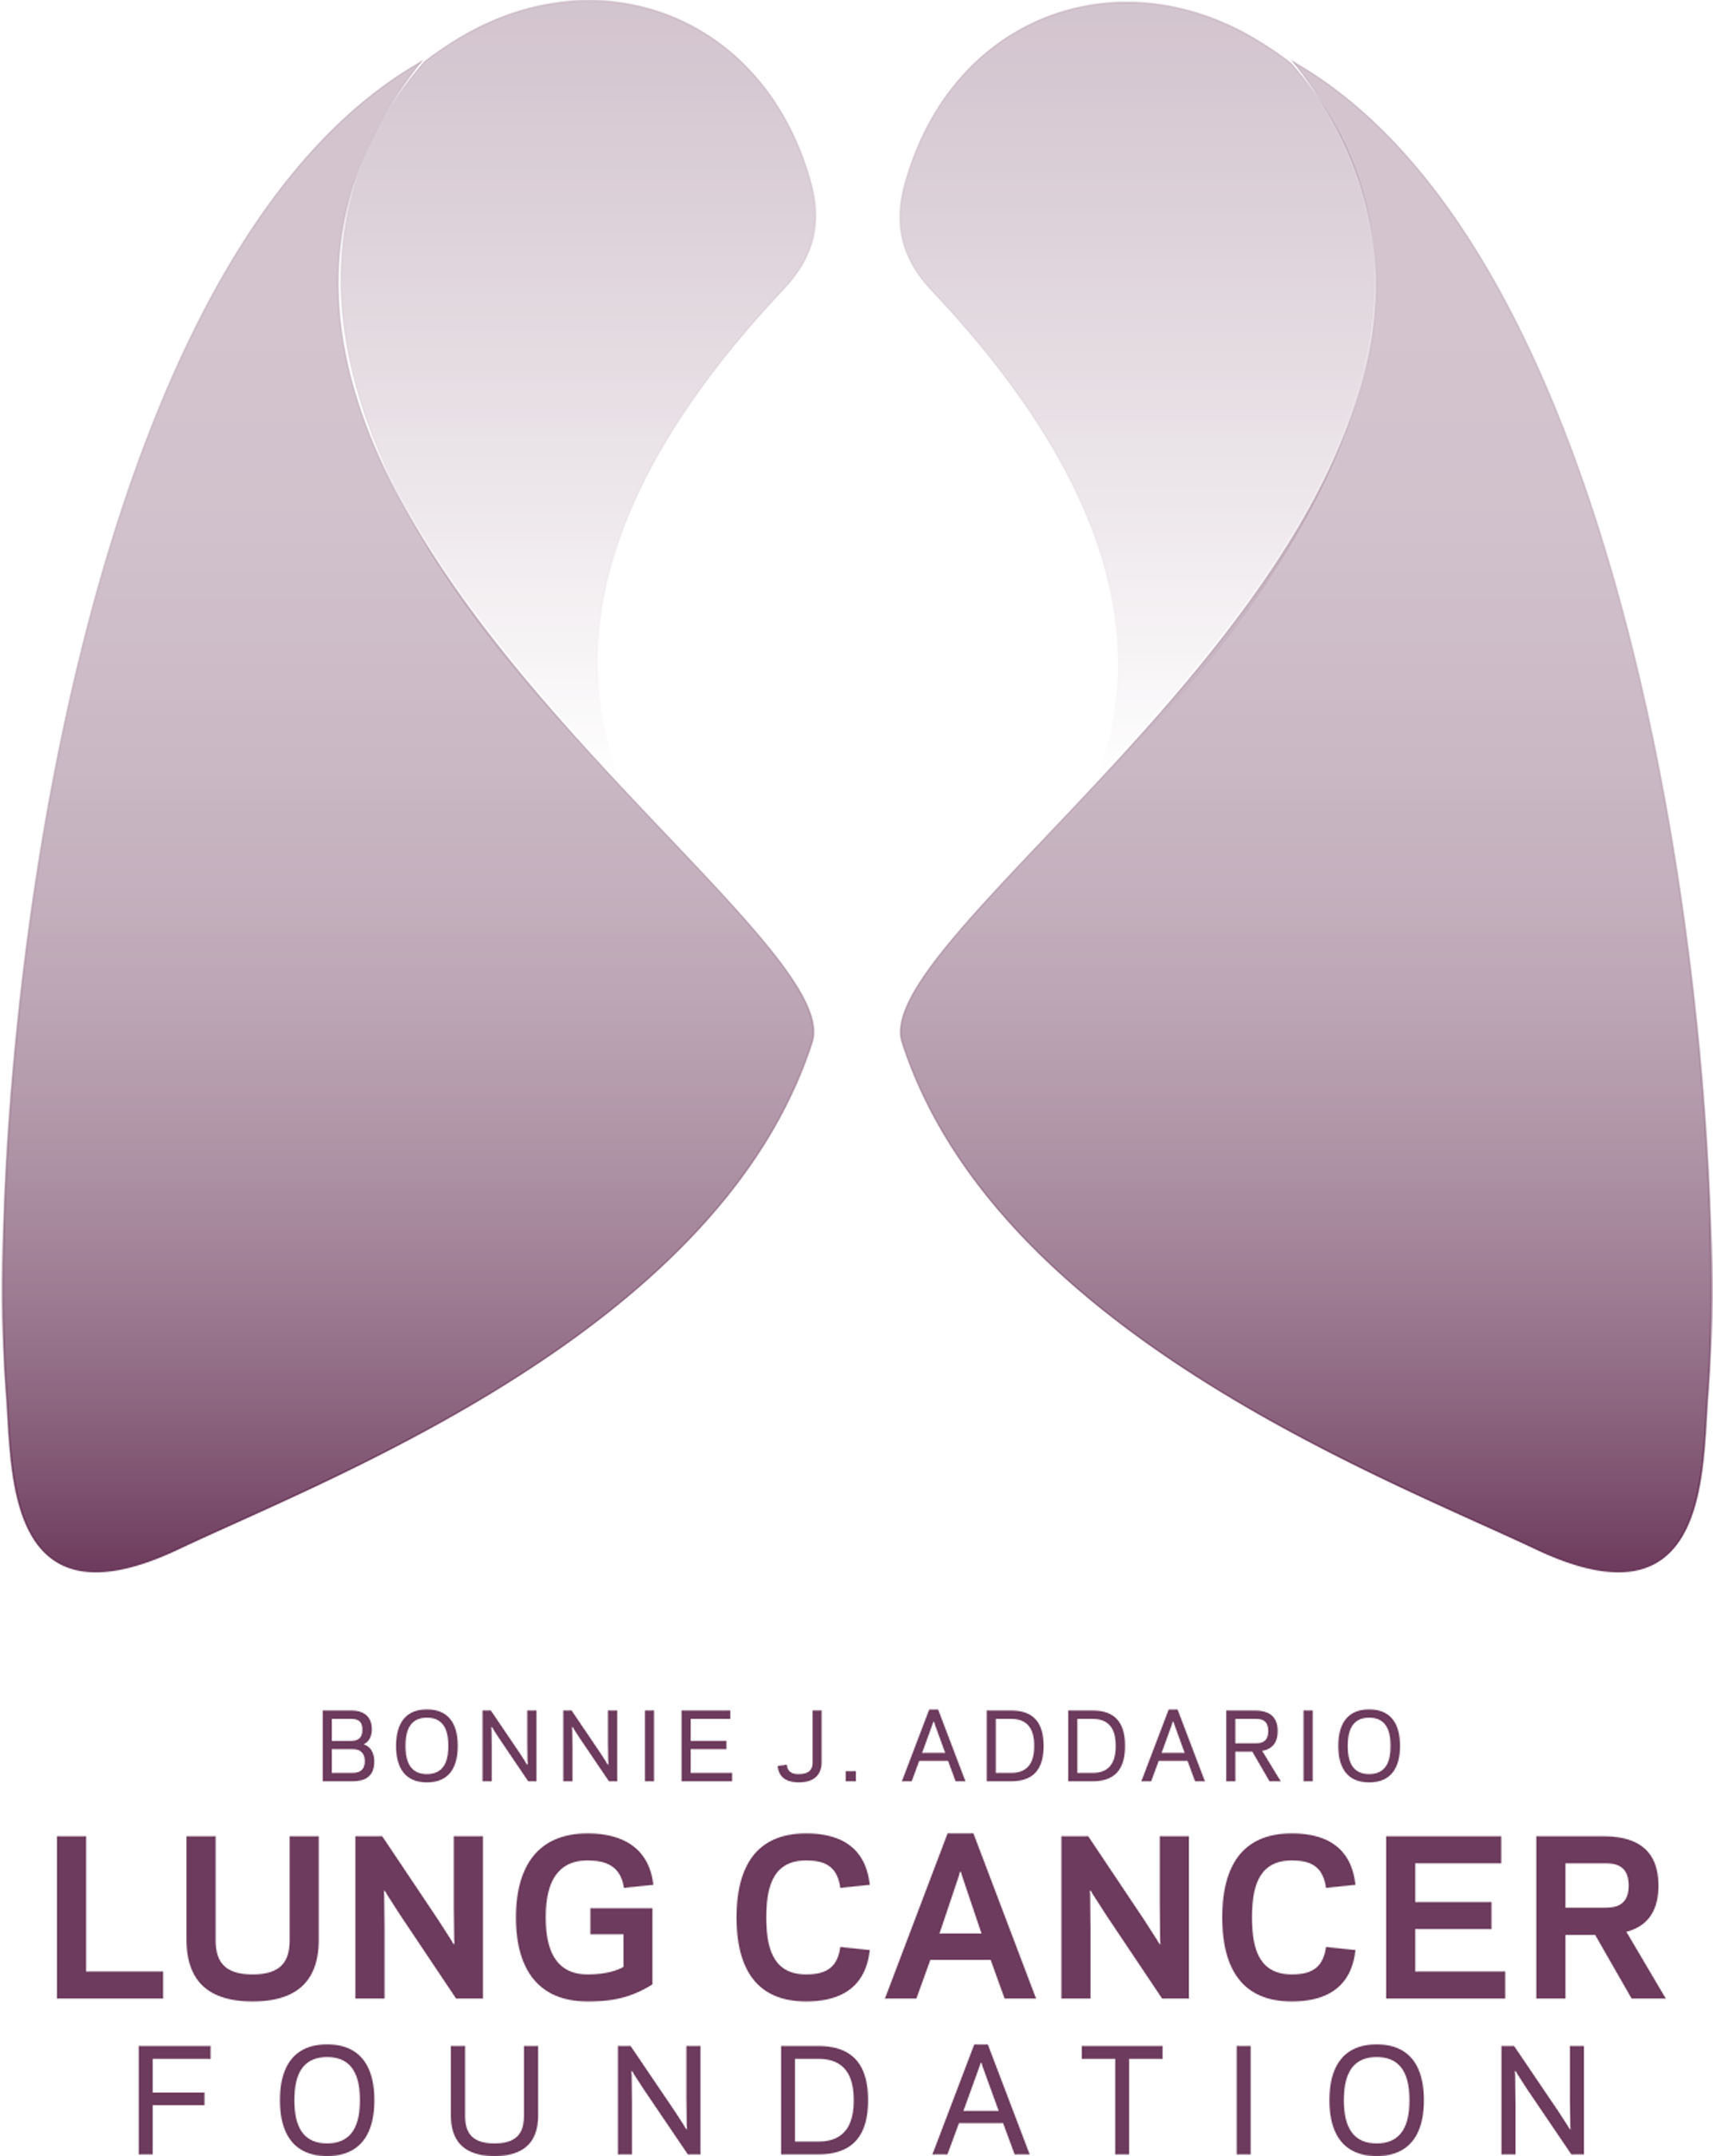 Bonnie J. Addario Lung Cancer Foundation logo